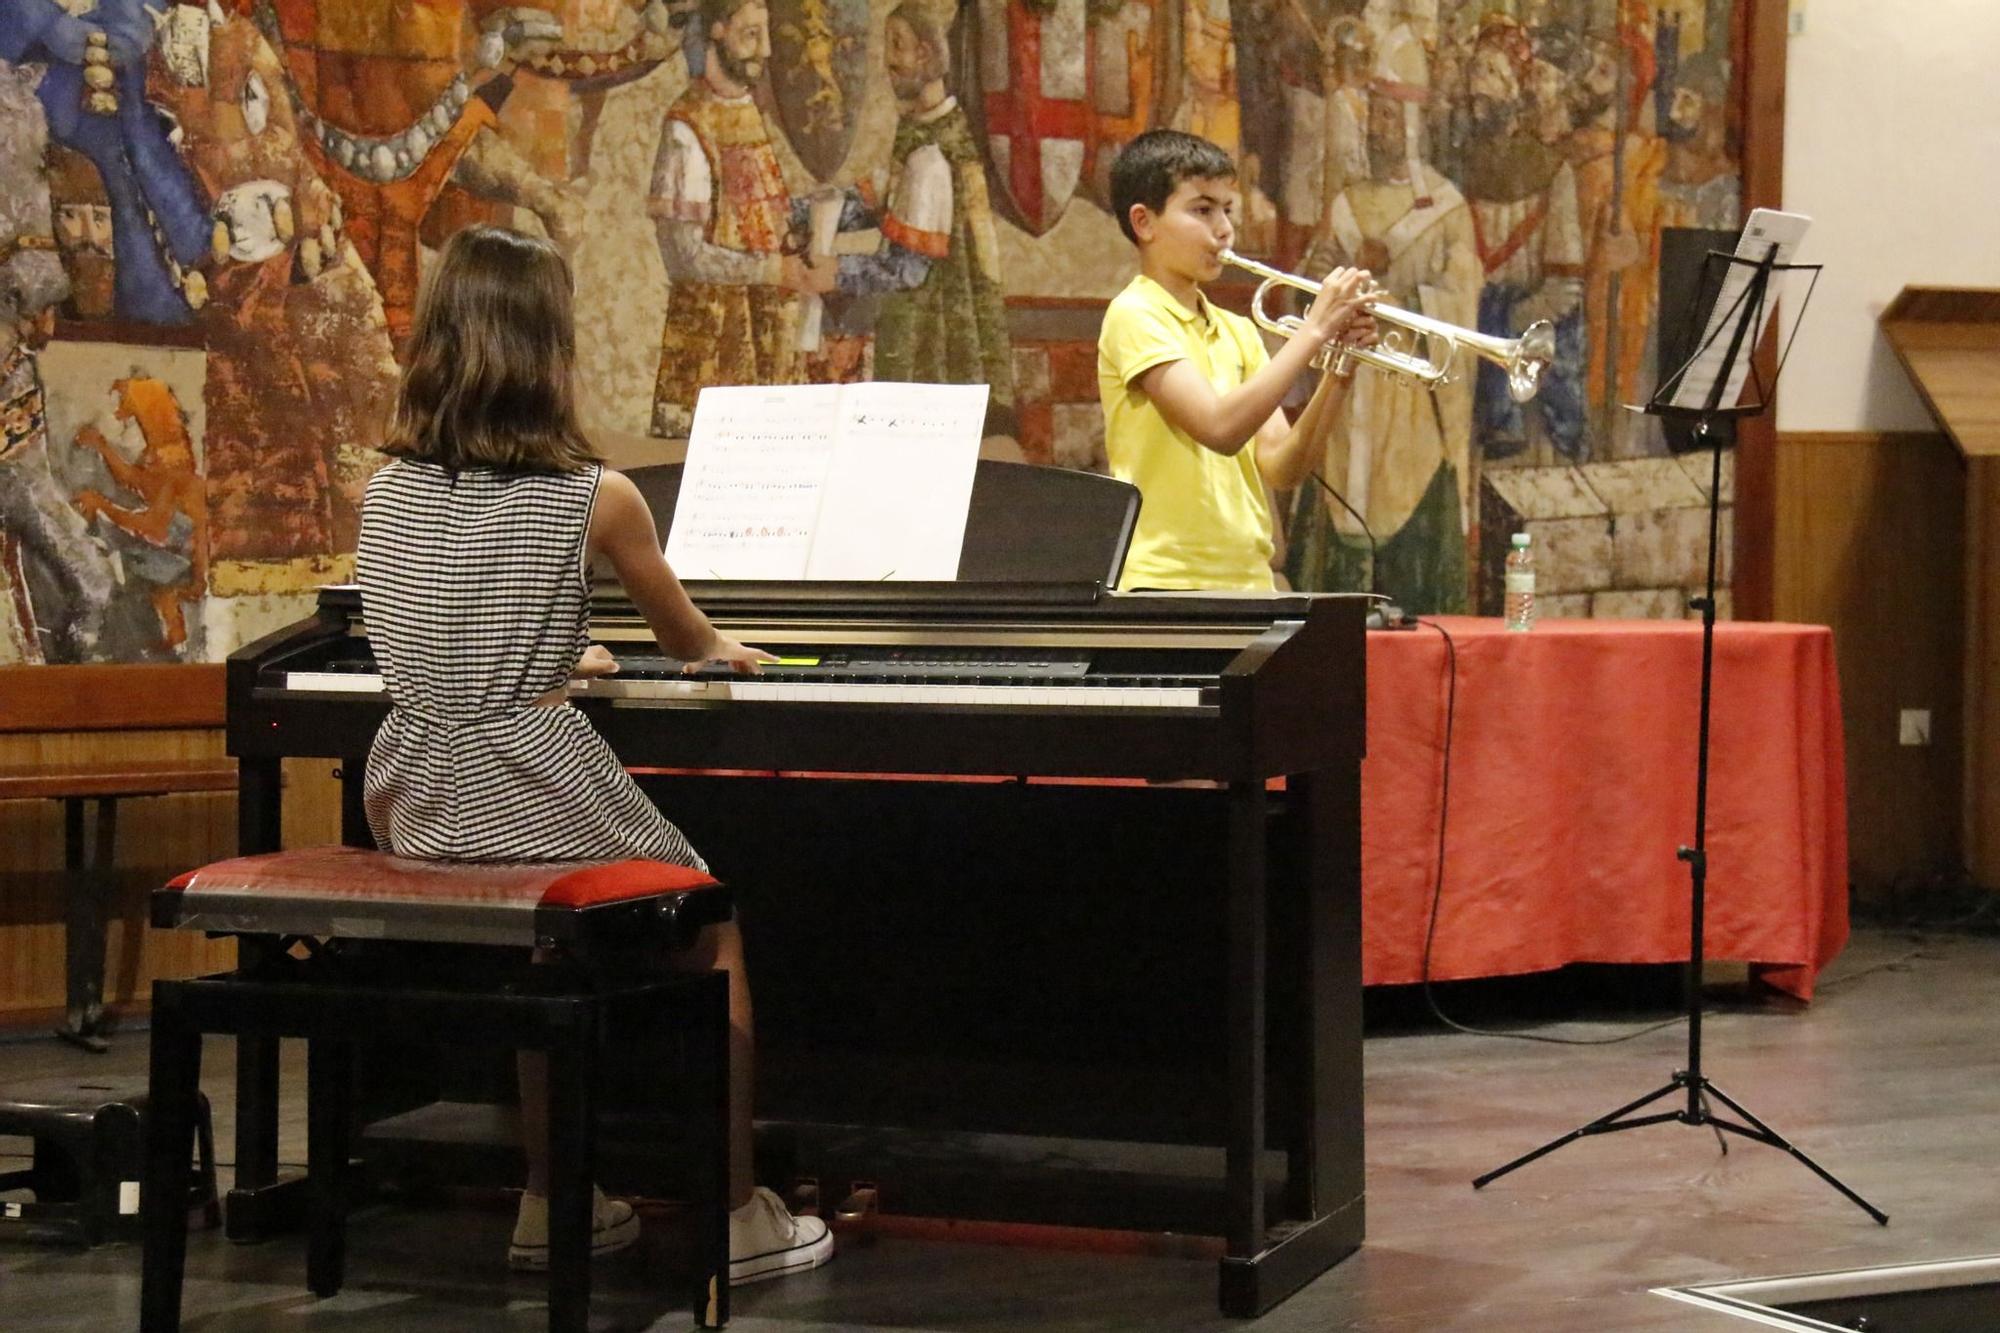 GALERÍA | Así despide el curso la Escuela de Música Duquesa Pimentel de Benavente